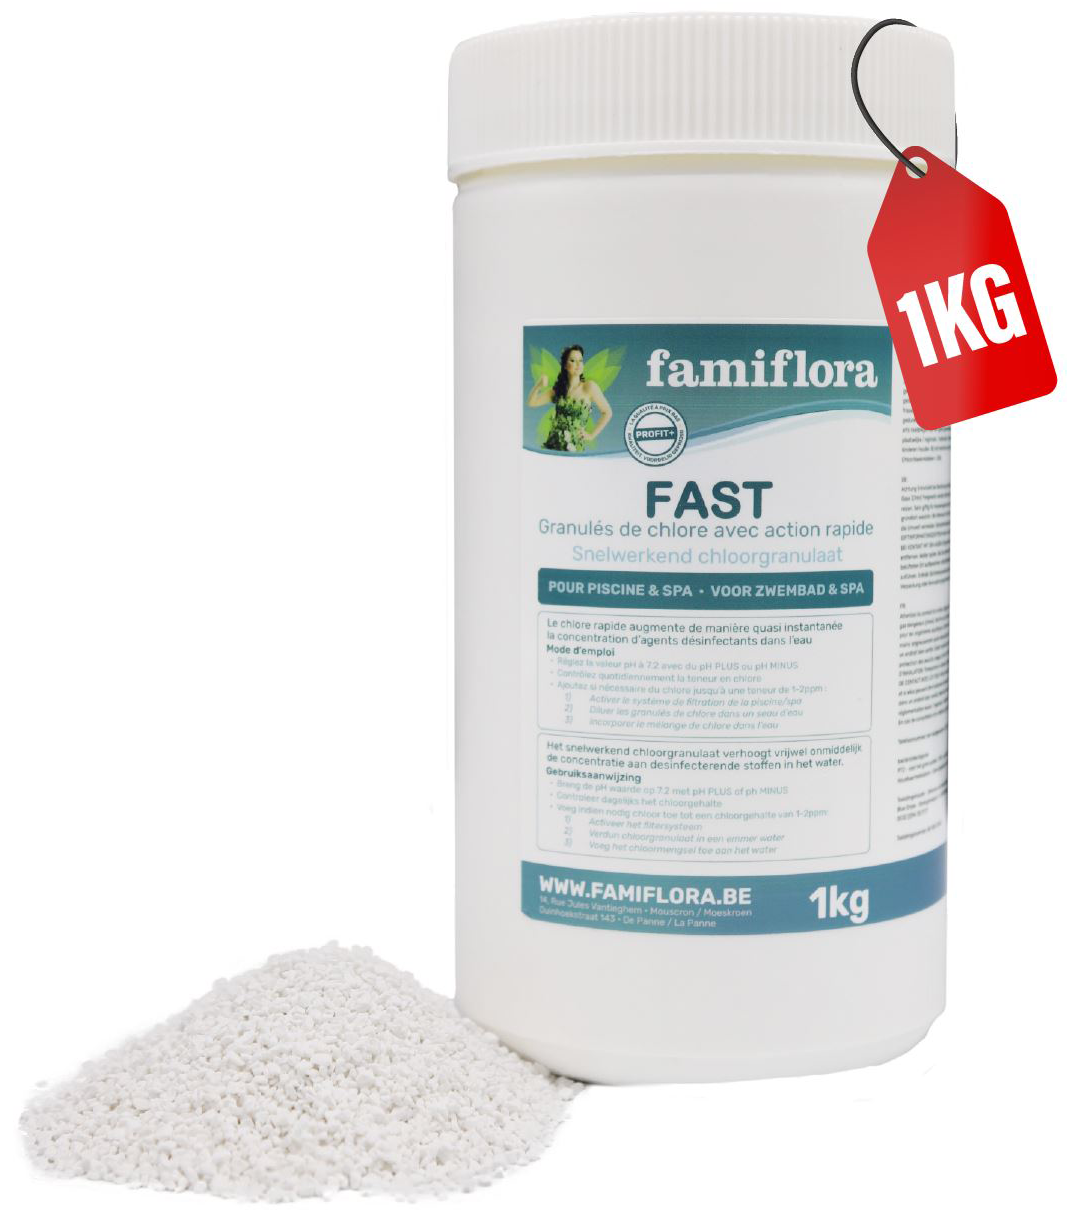 Famiflora Fast - fast-acting chlorine granules 1kg